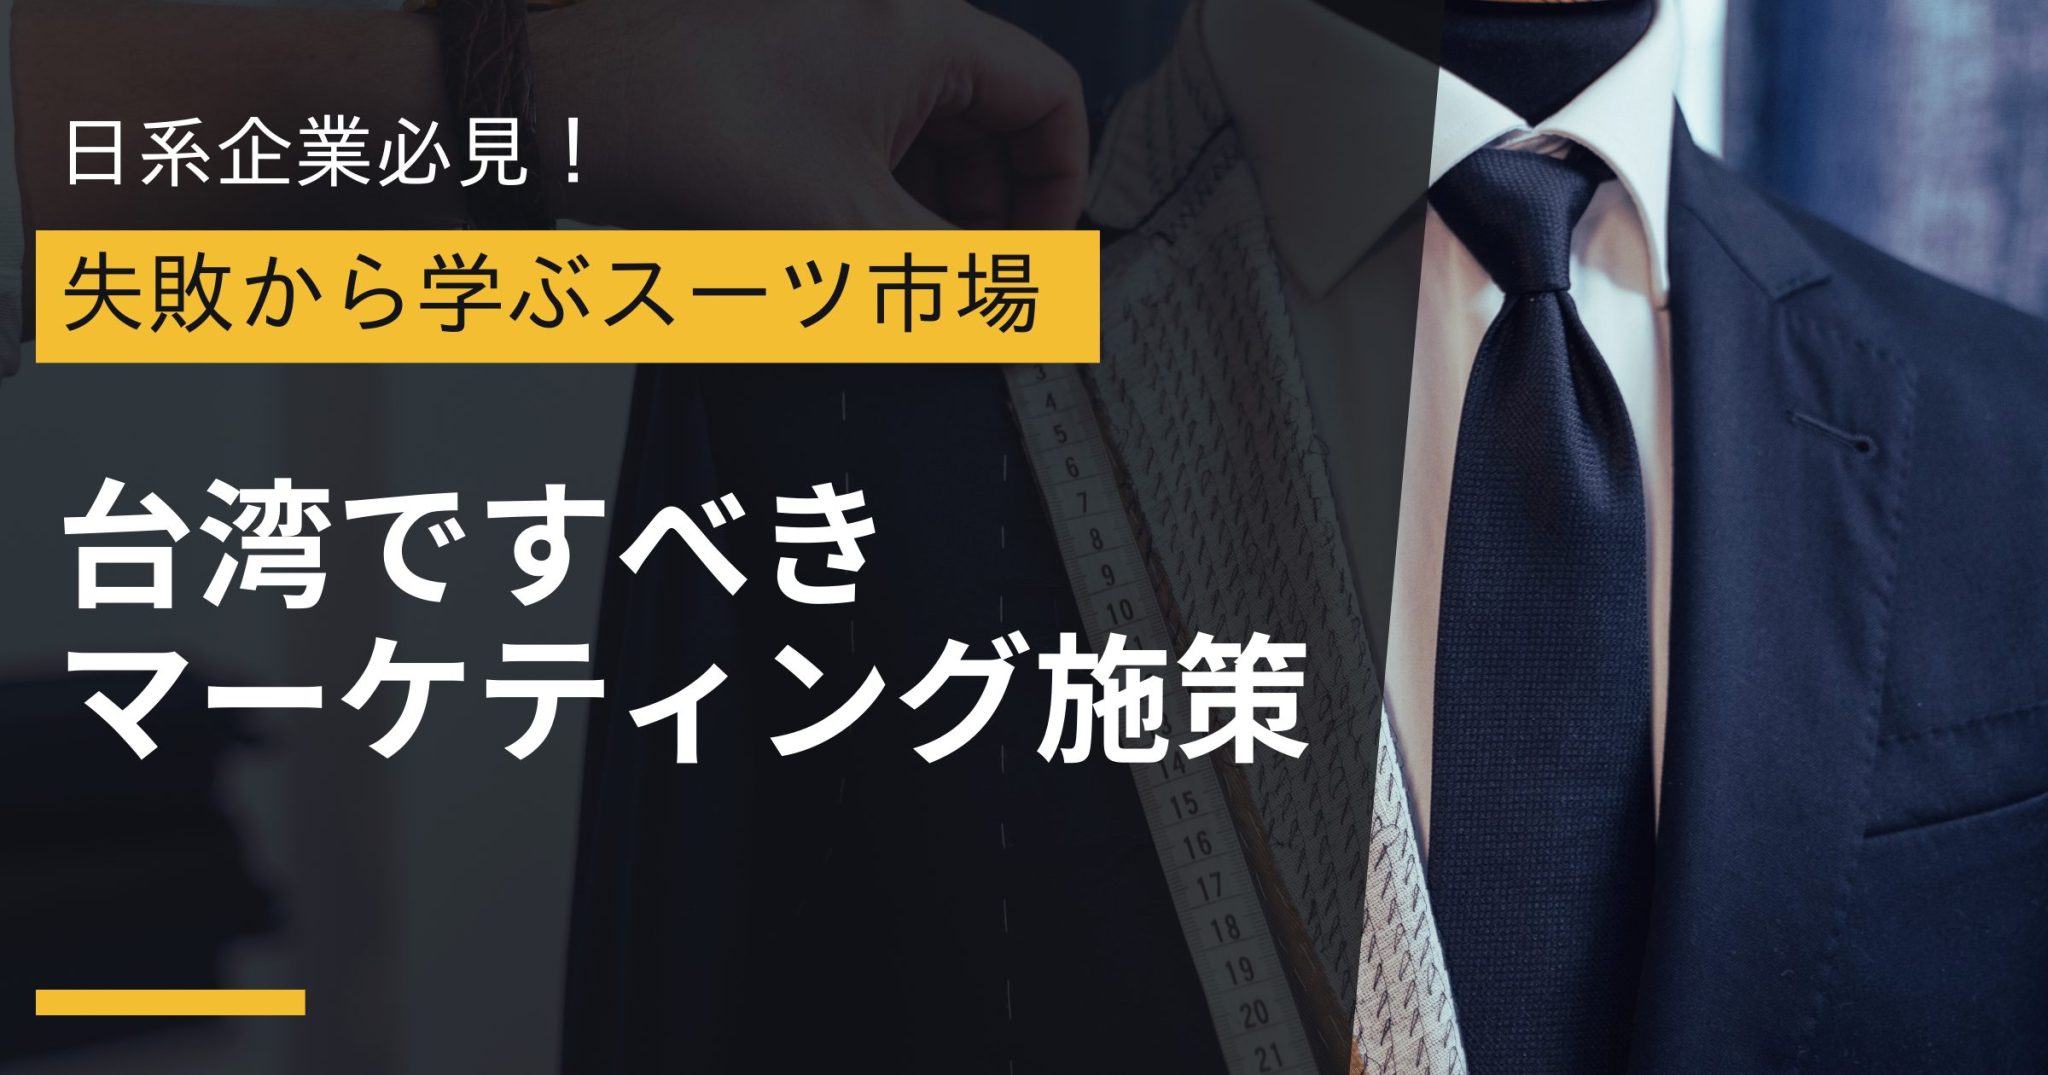 台湾スーツ市場 1 in 【失敗から学ぶ】台湾スーツ市場で日系企業が成功する秘訣